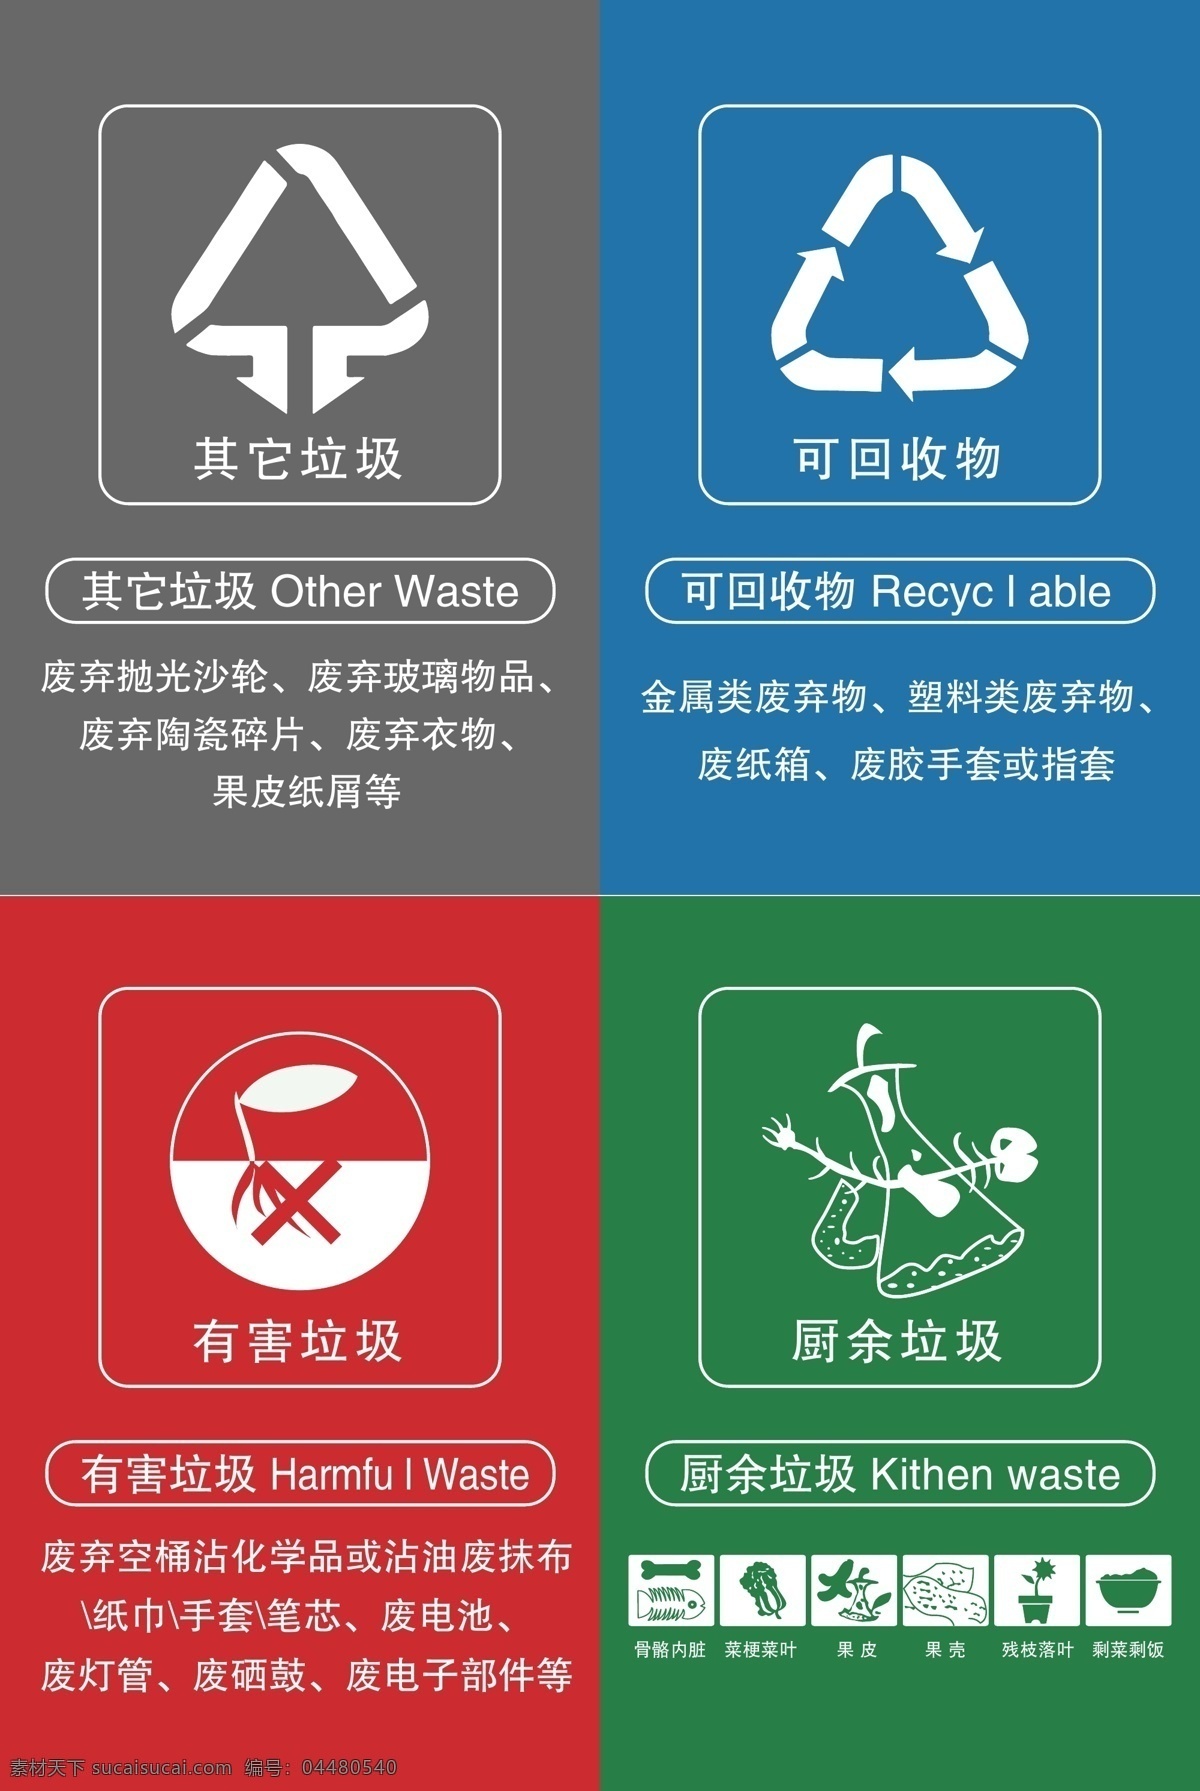 垃圾分类图片 垃圾分类 垃圾 分类 垃圾桶 标识 室外广告设计